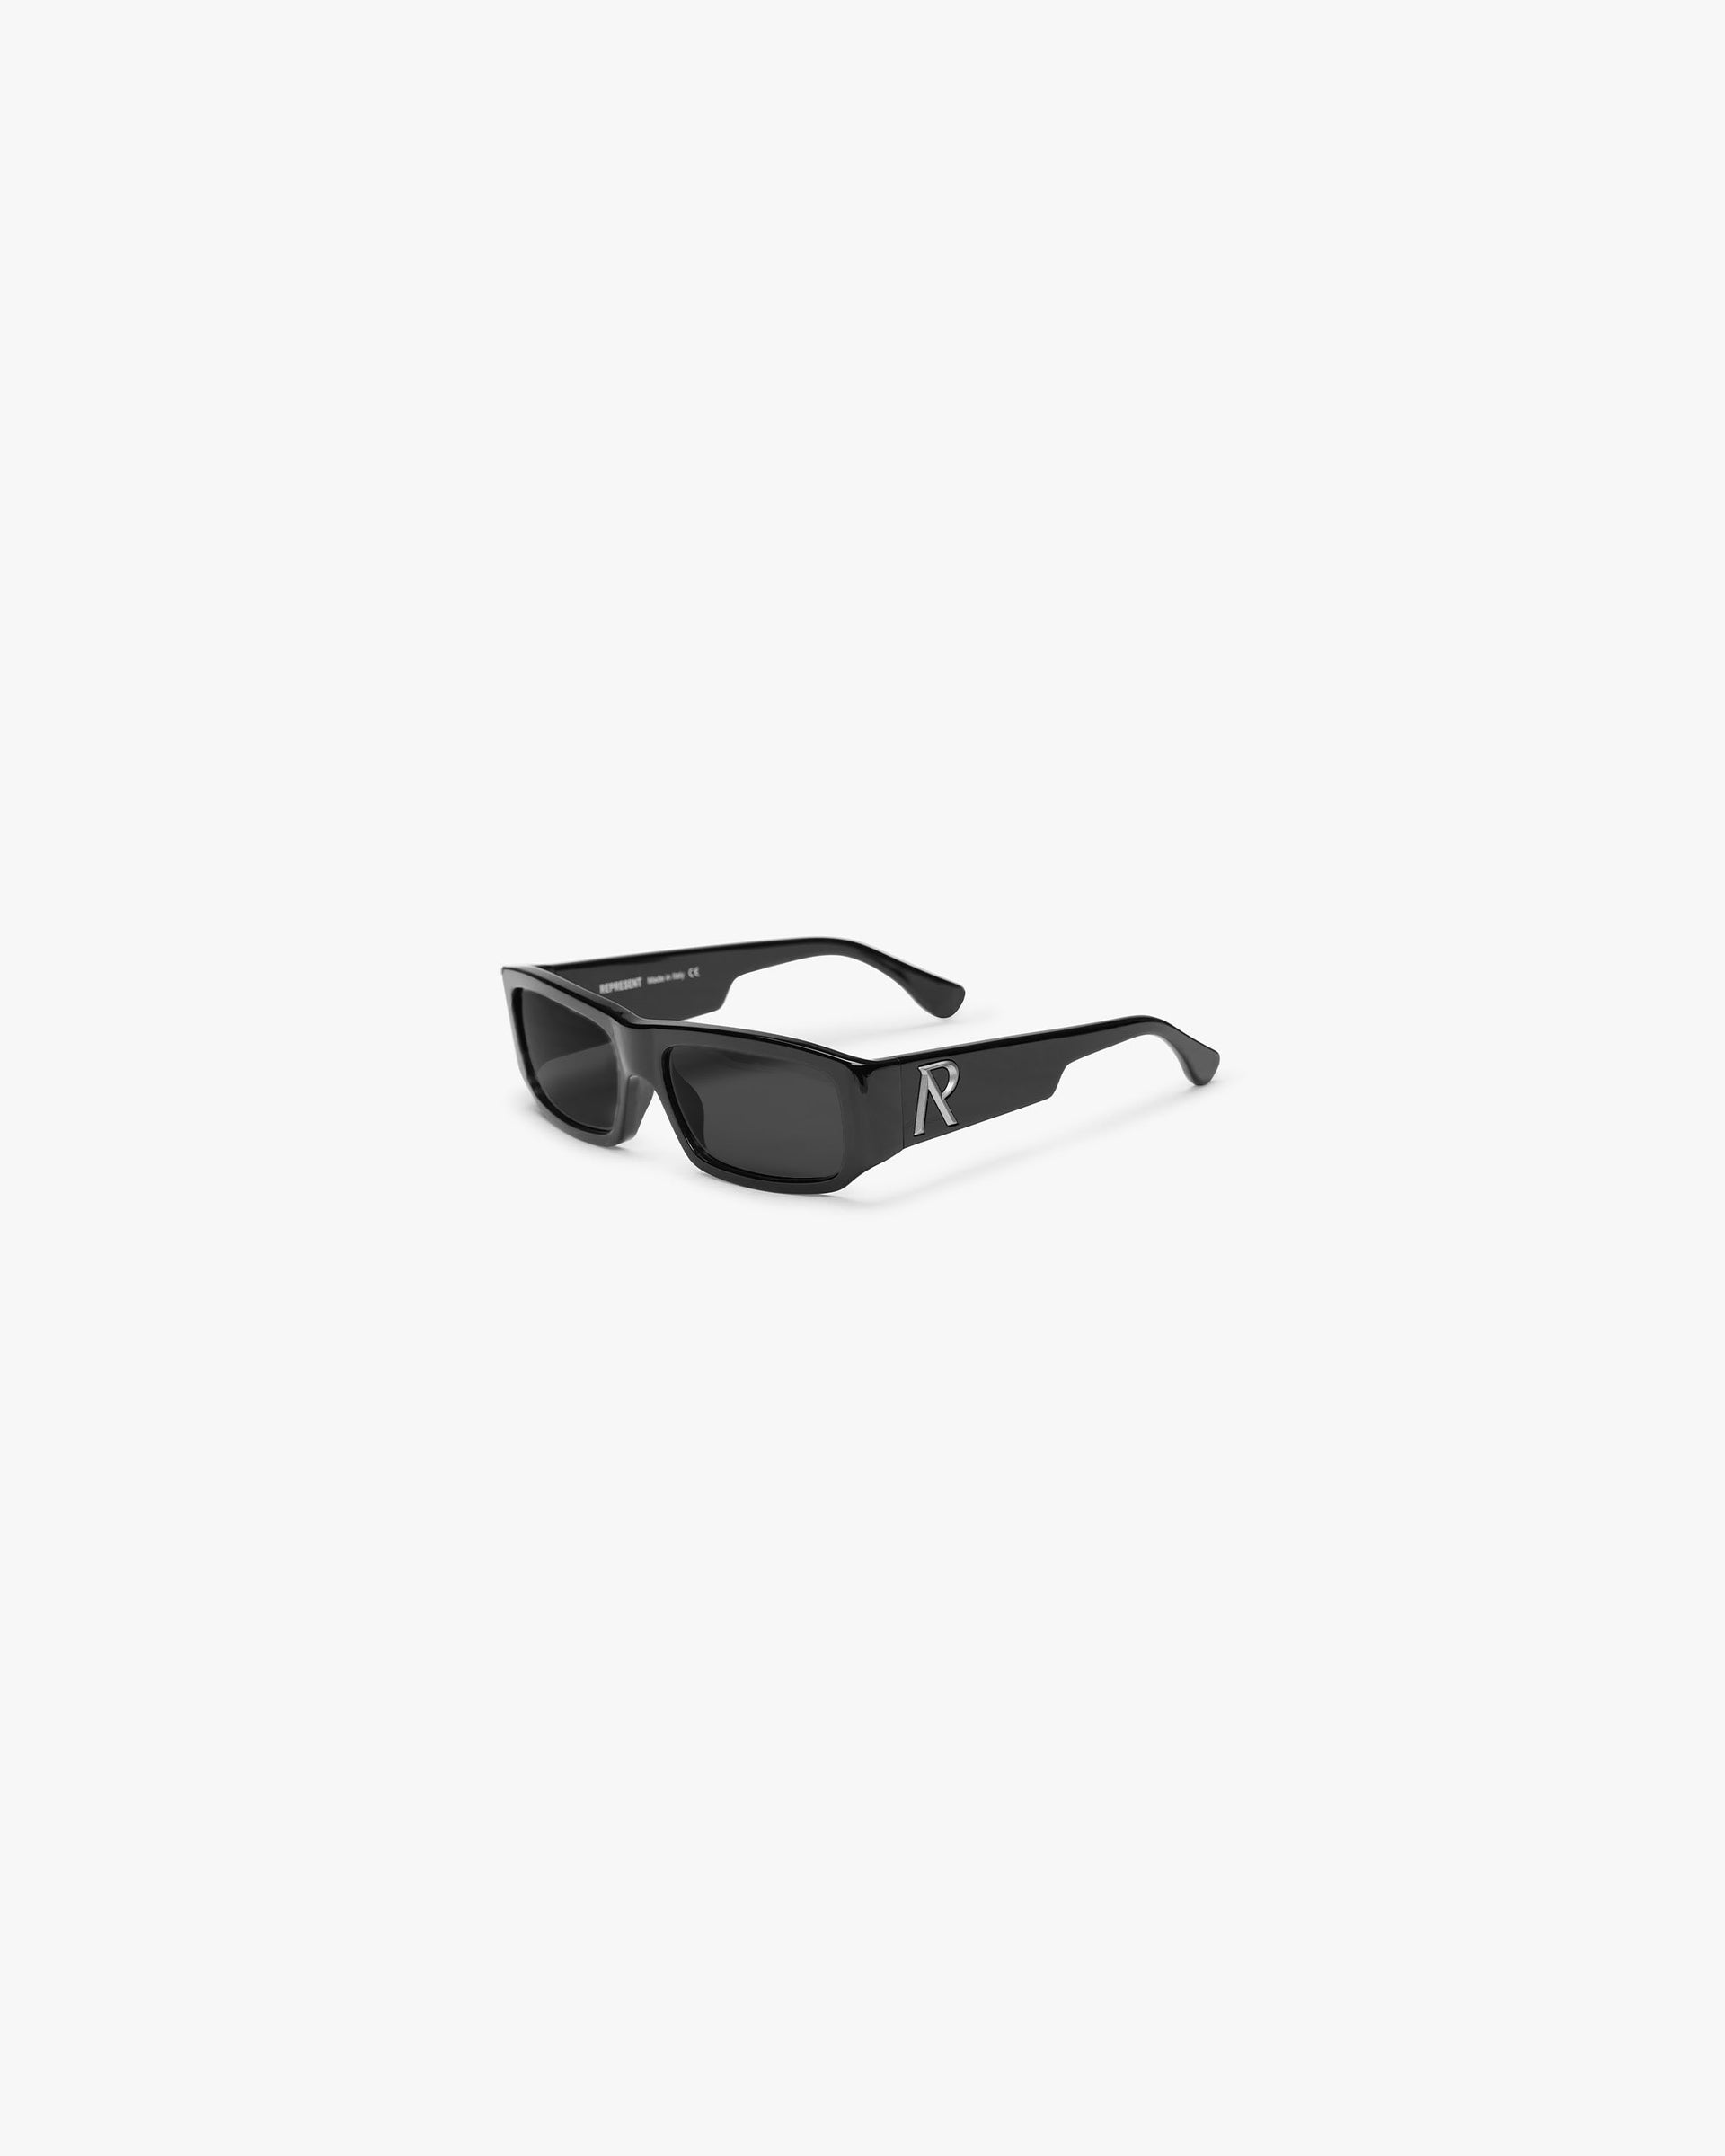 Slim Initial Sunglasses | Black Accessories SC23 | Represent Clo